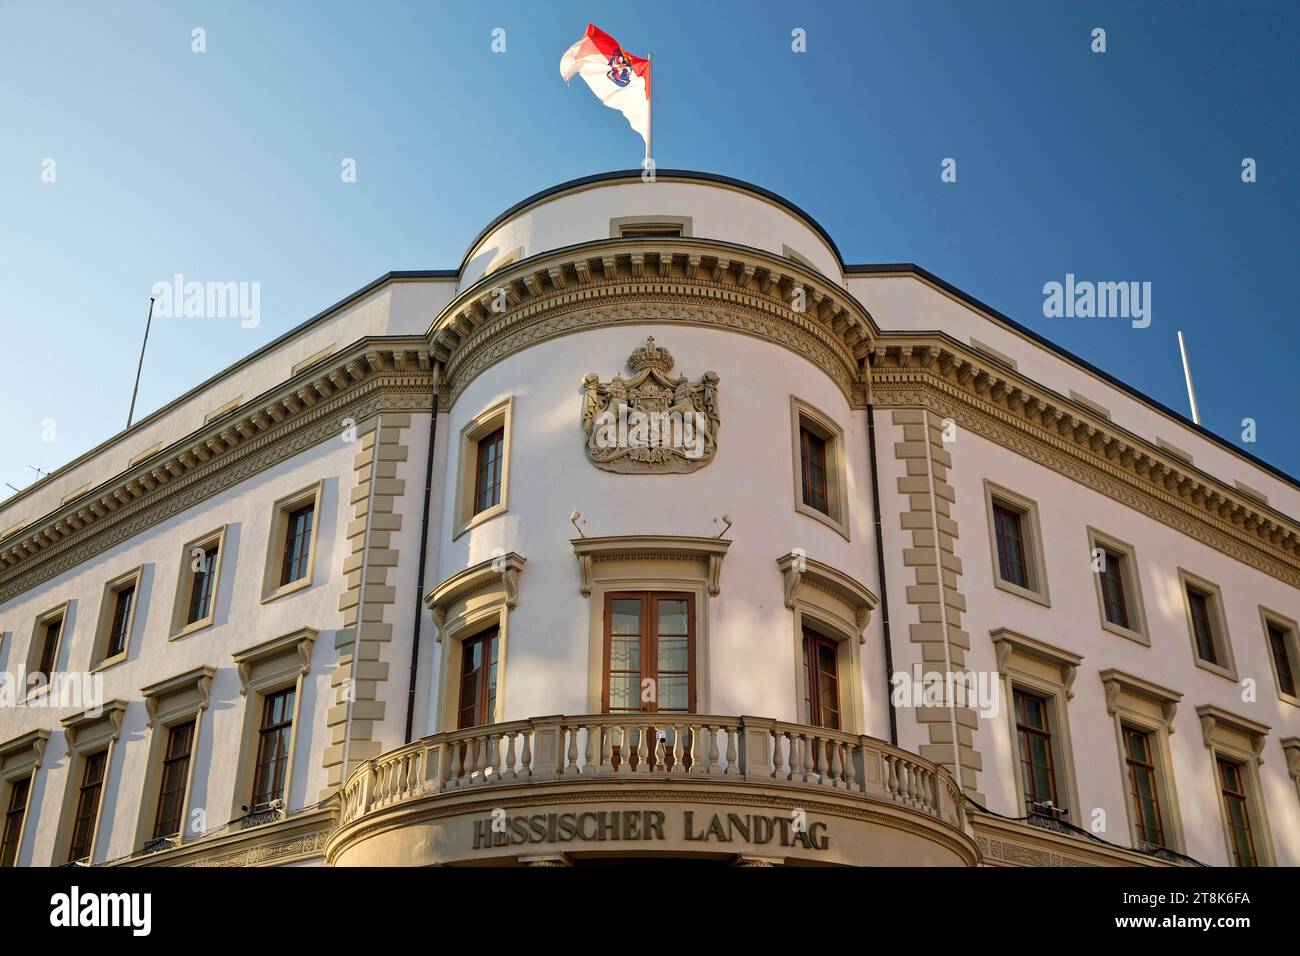 Hessischer landtag mit Landesflagge im ehemaligen Nassauer Stadtschloss, Deutschland, Hessen, Wiesbaden Stockfoto